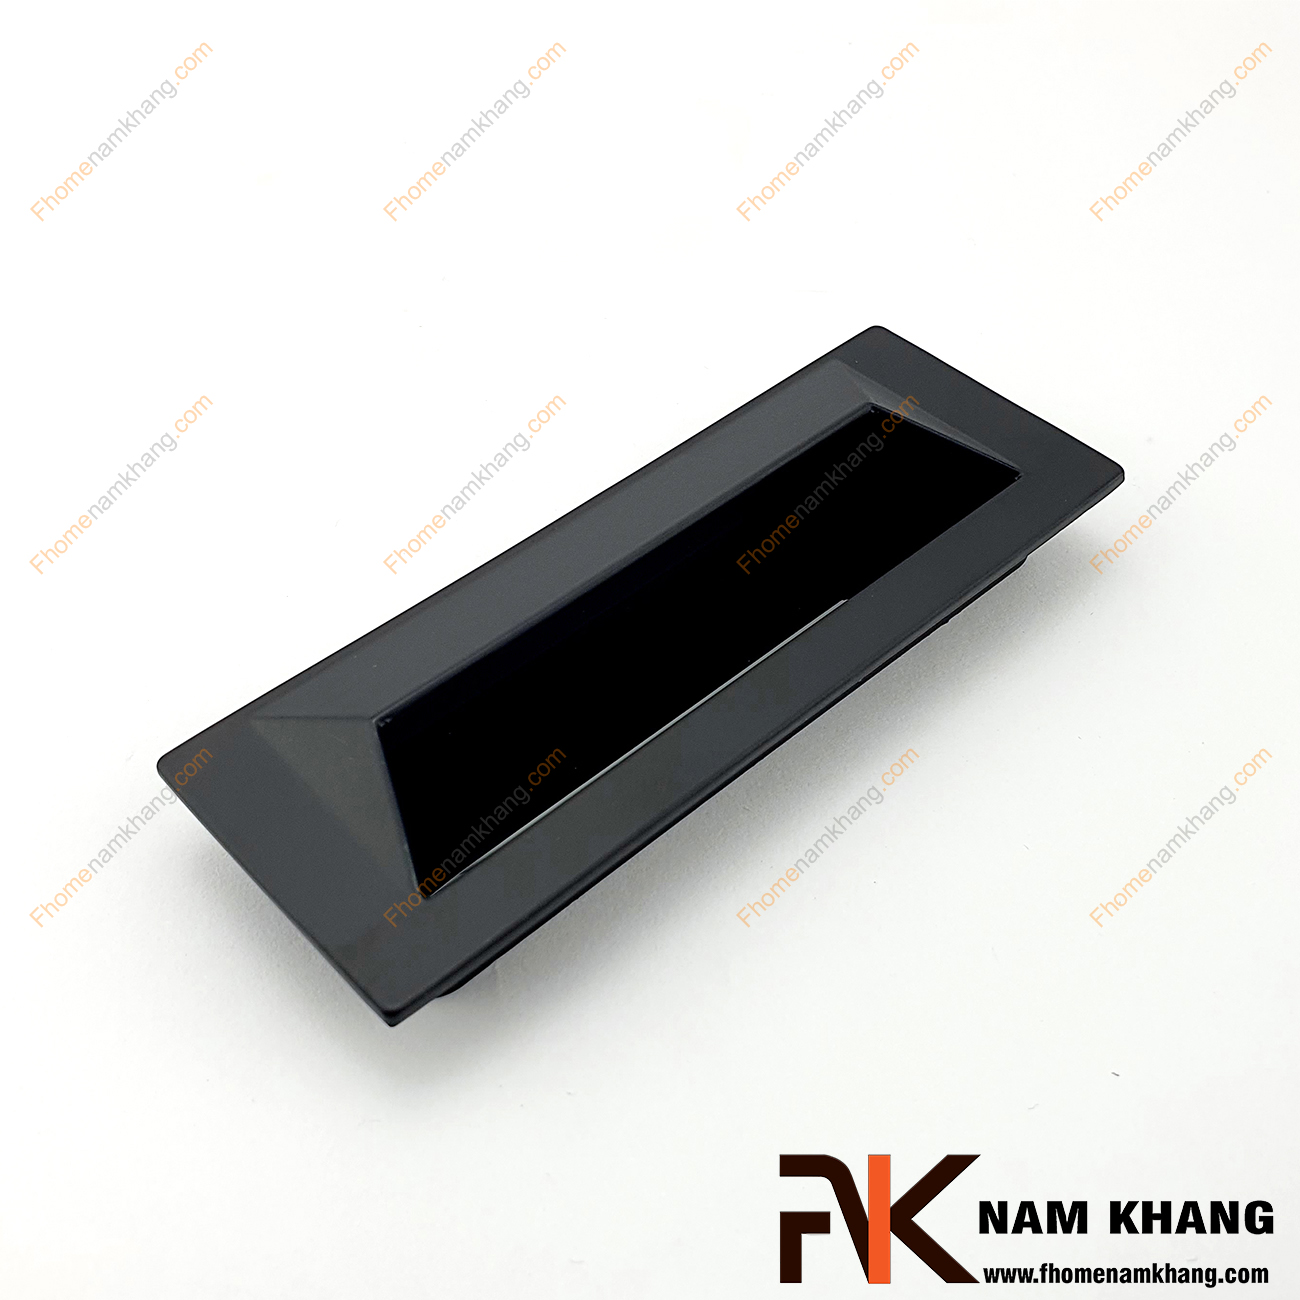 Tay nắm âm tủ dạng trơn màu đen mờ NK223-D là loại tay nắm chuyên dùng cho các loại tủ đặt ở những nơi có không gian hạn chế hoặc dùng để nâng cao tính thẫm mỹ của sản phẩm